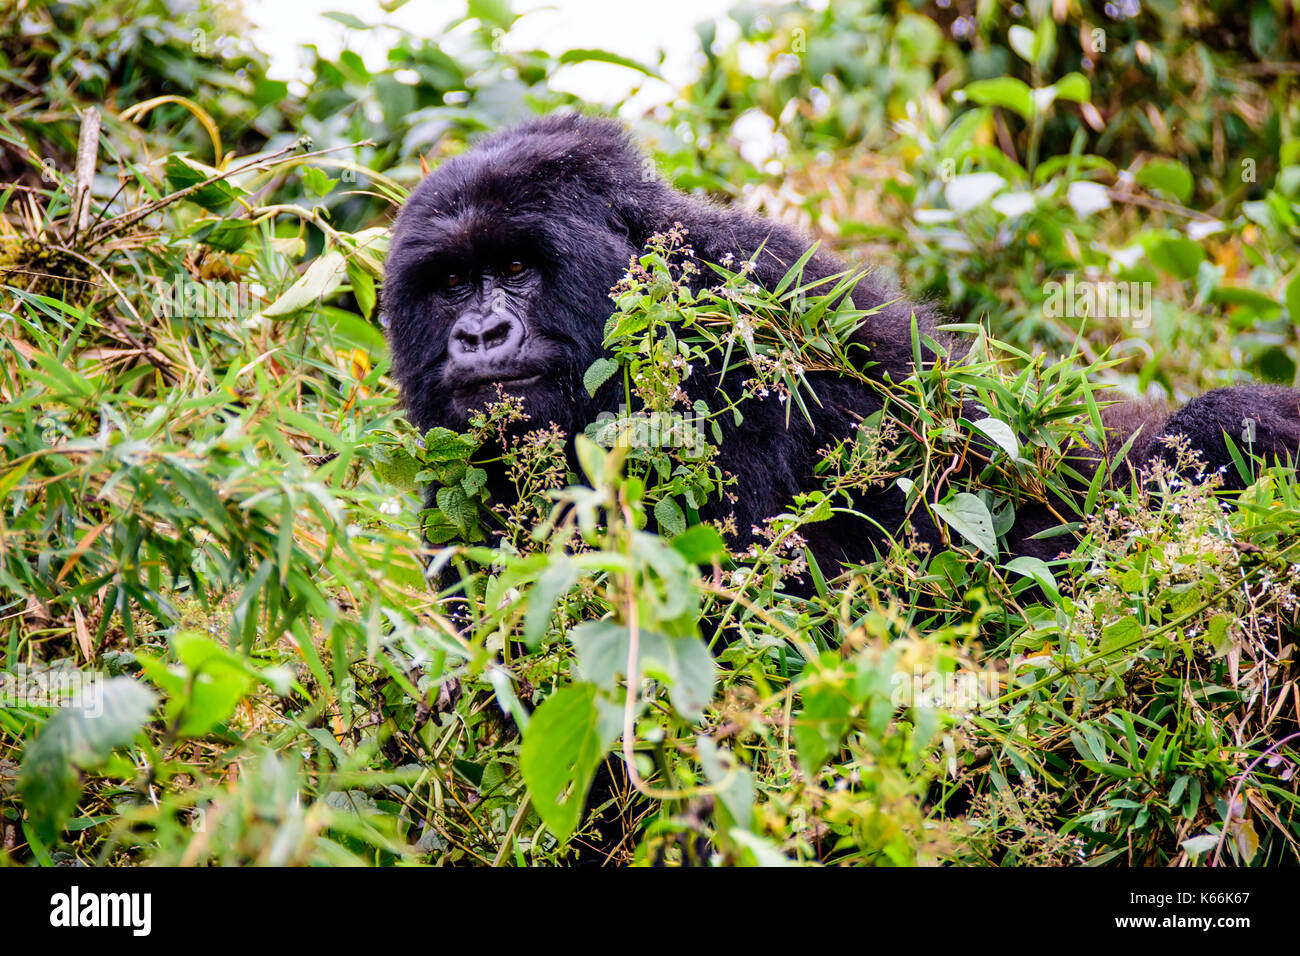 female mountain gorilla peering through the undergrowth Stock Photo